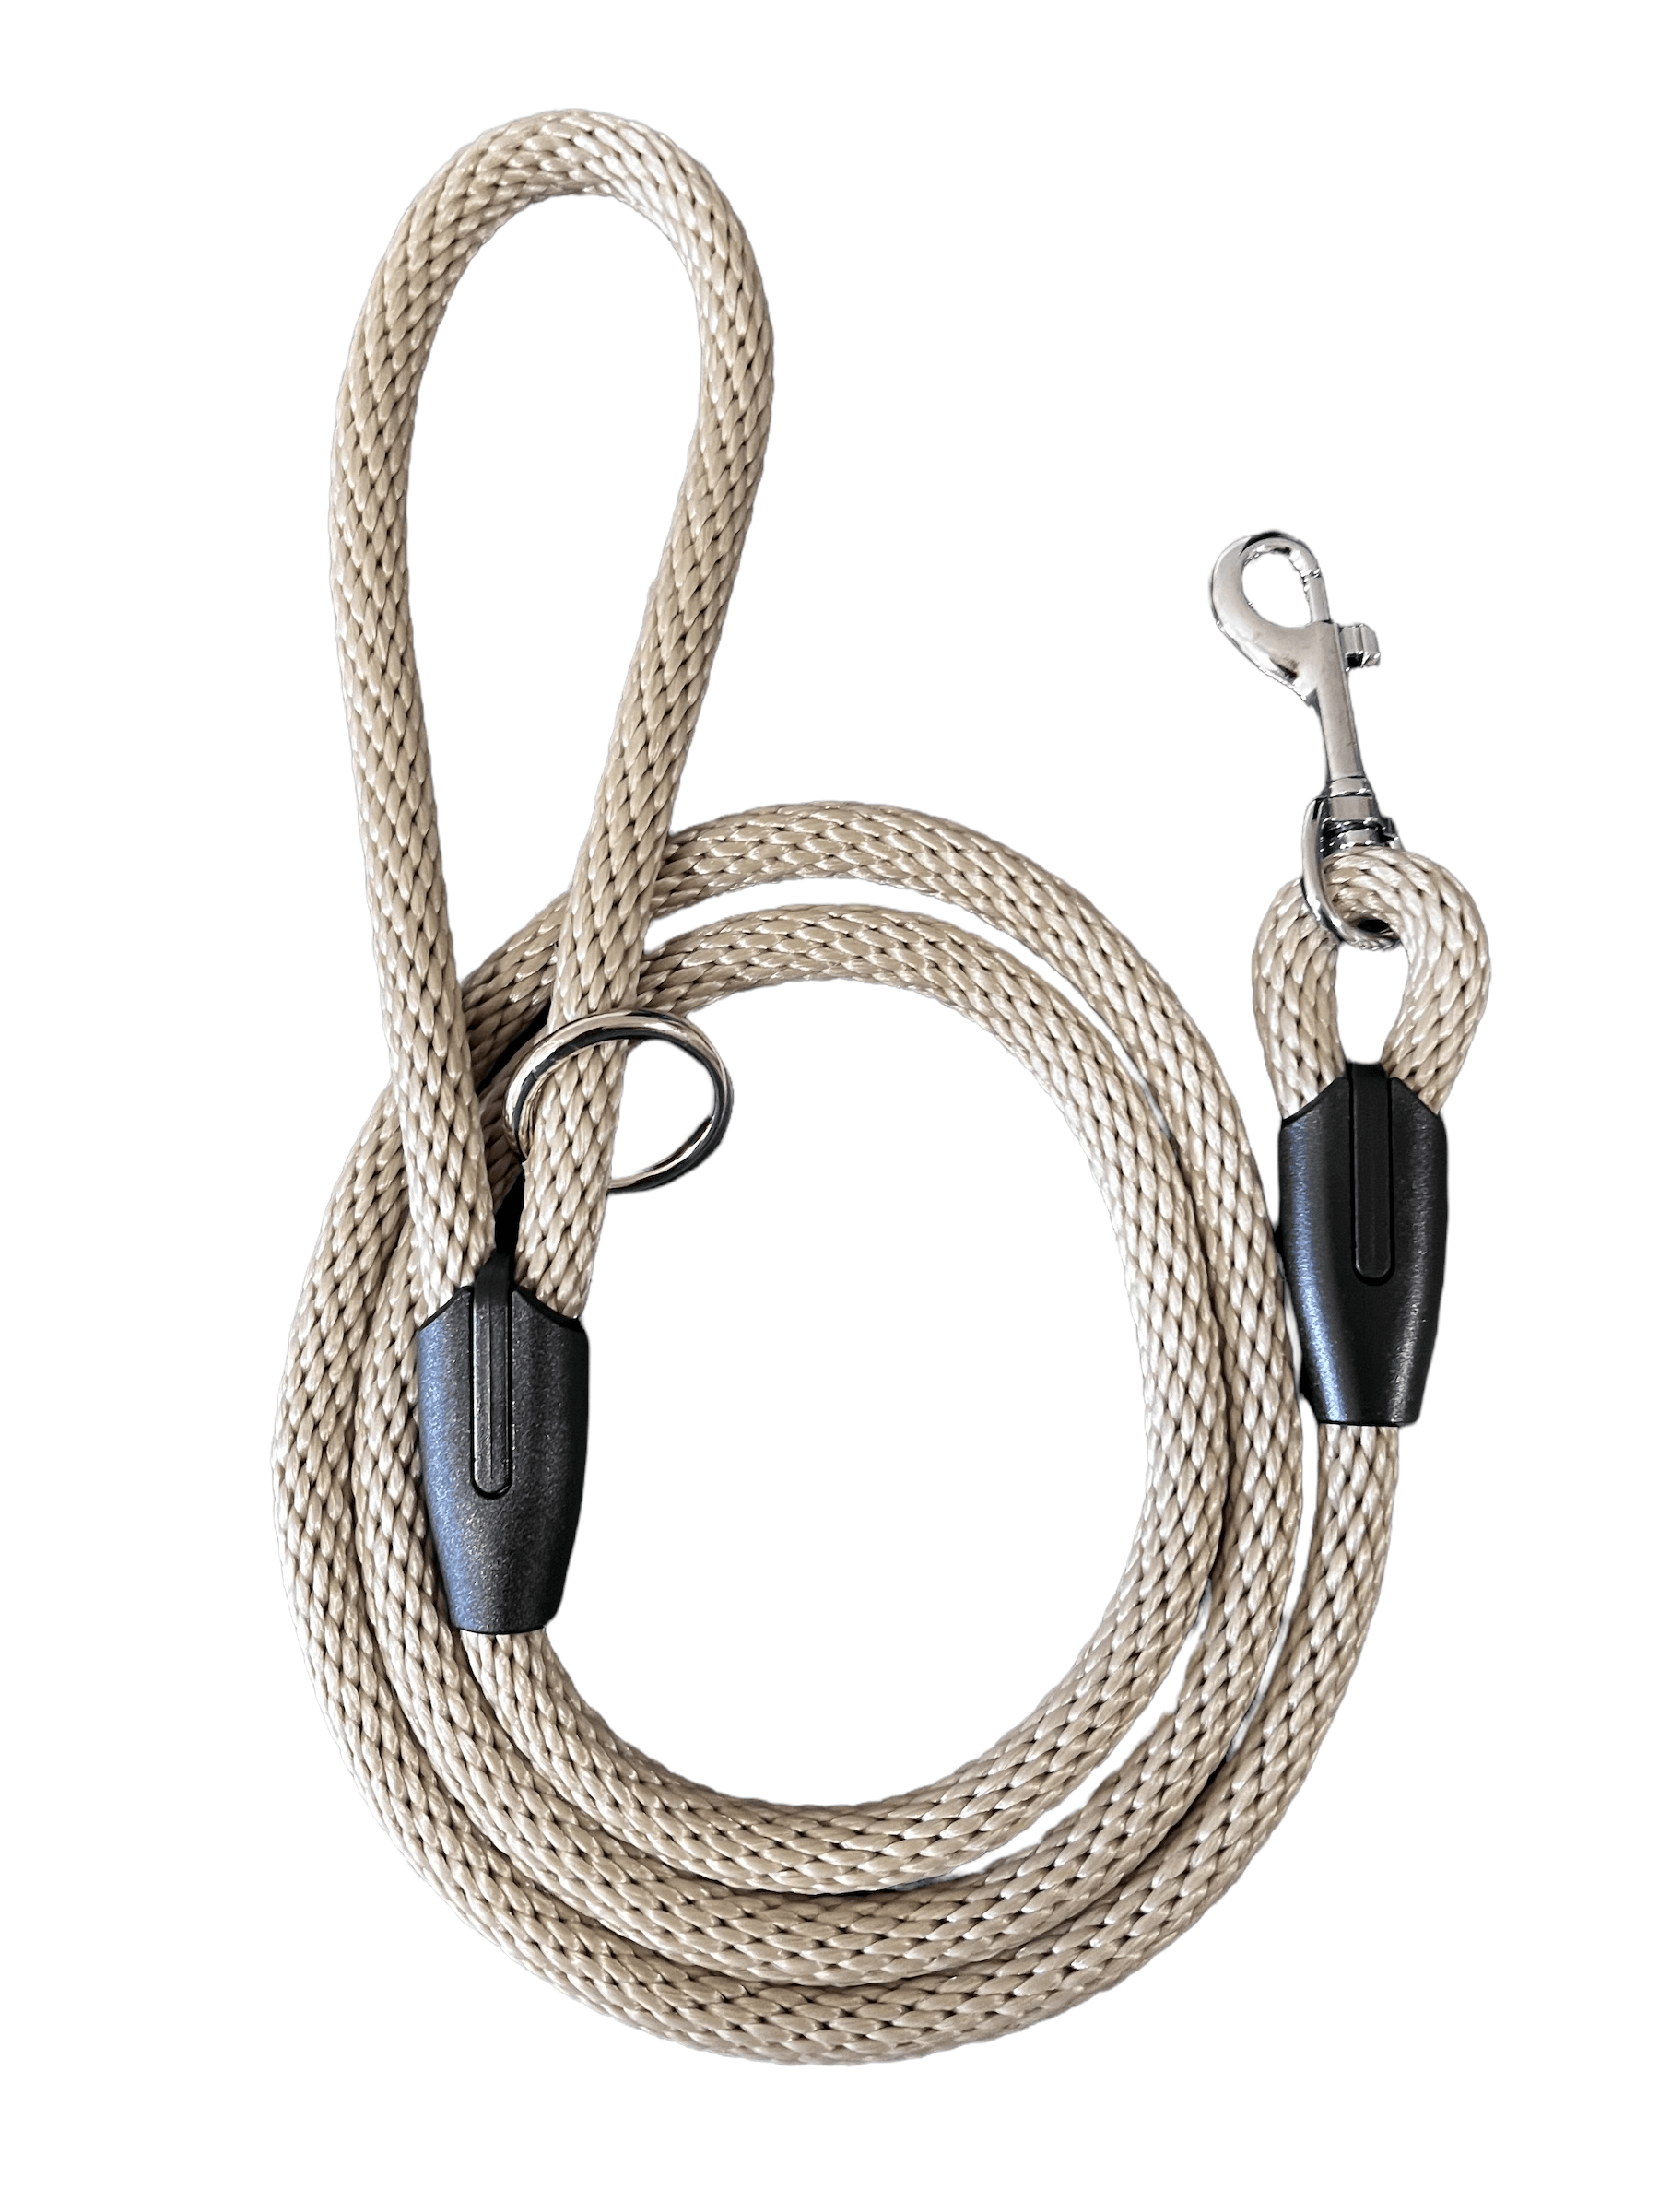 Navy Blue Solid Braid Leash - (Small) - Cluff CO LLC